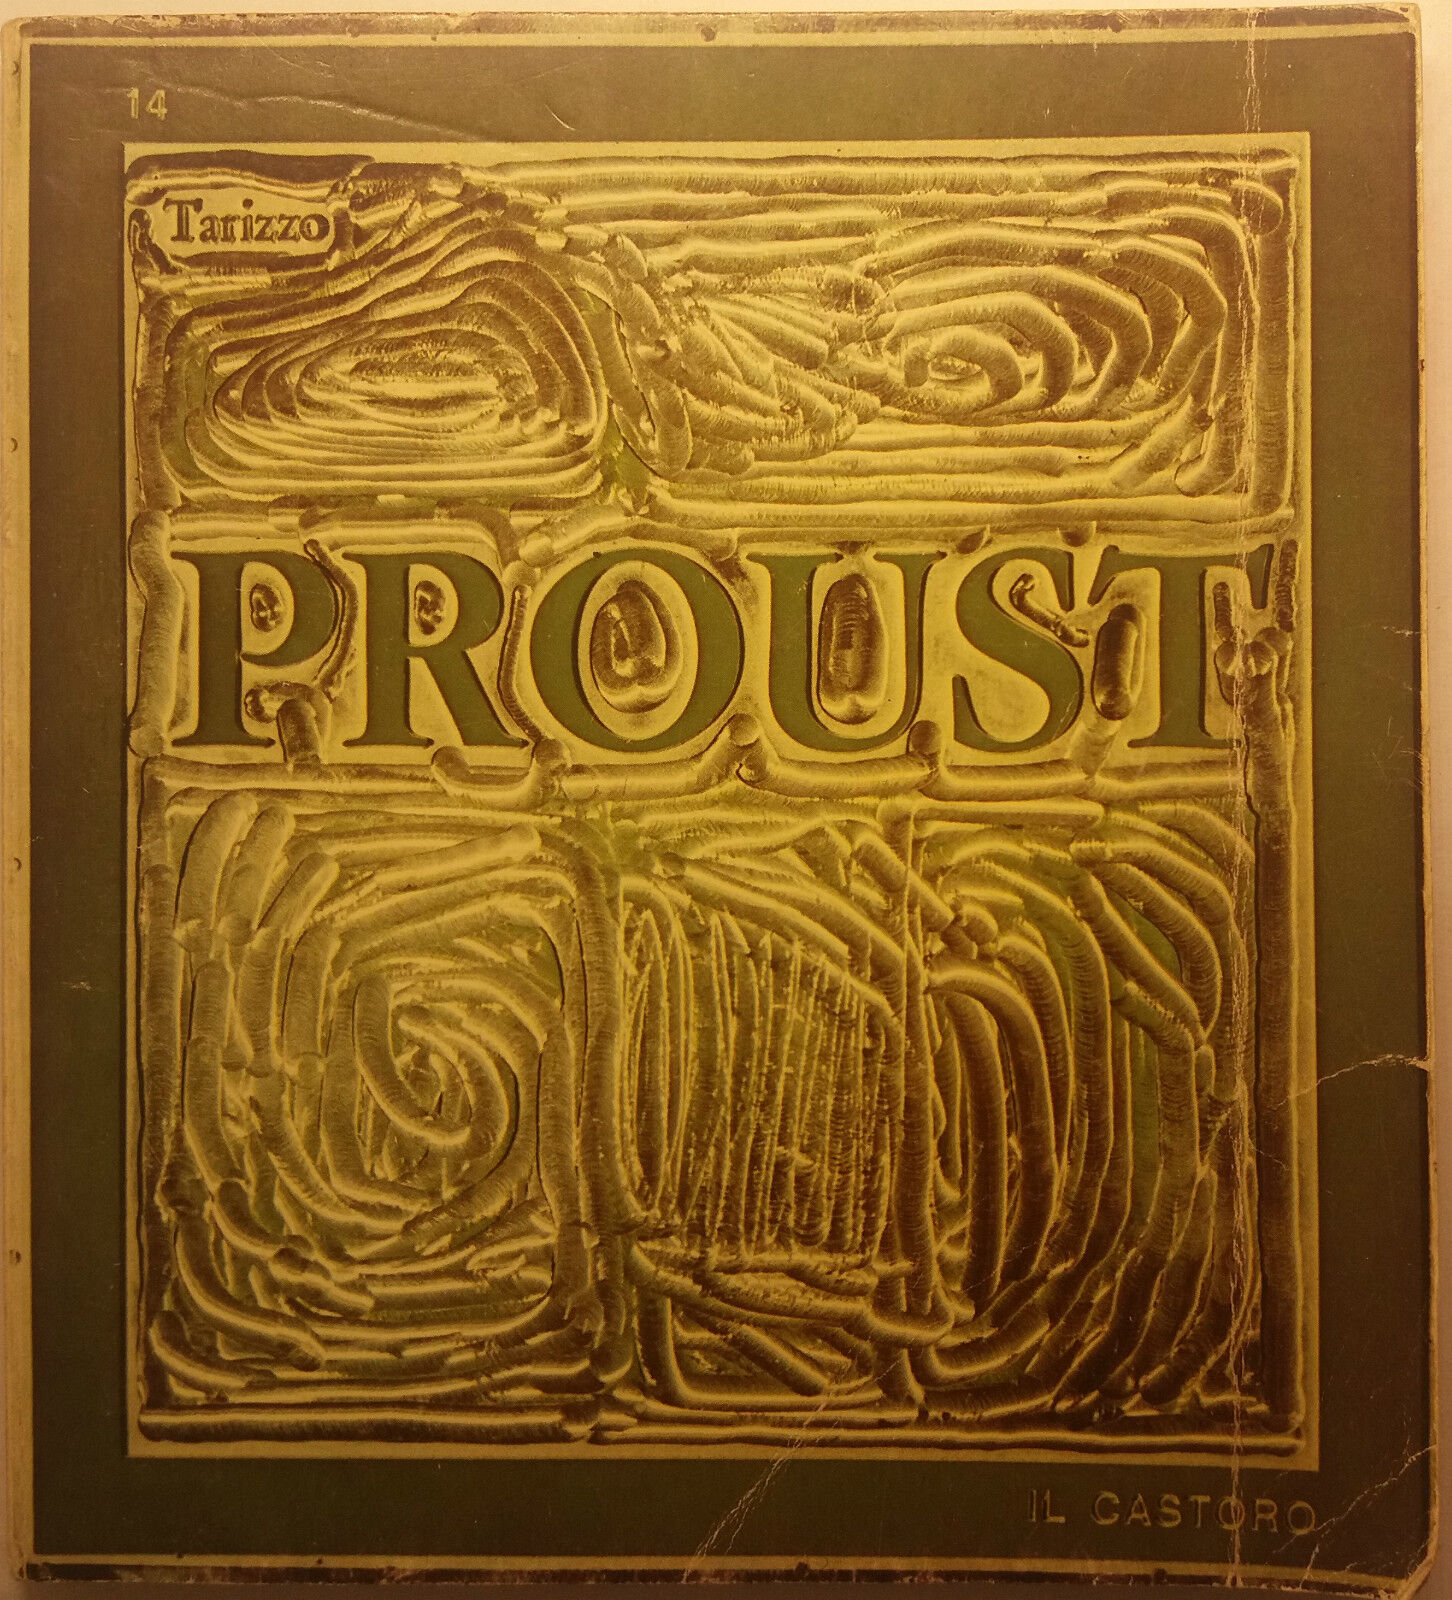 Proust - Domenico Tarizzo - La Nuova Italia - 1976 - G